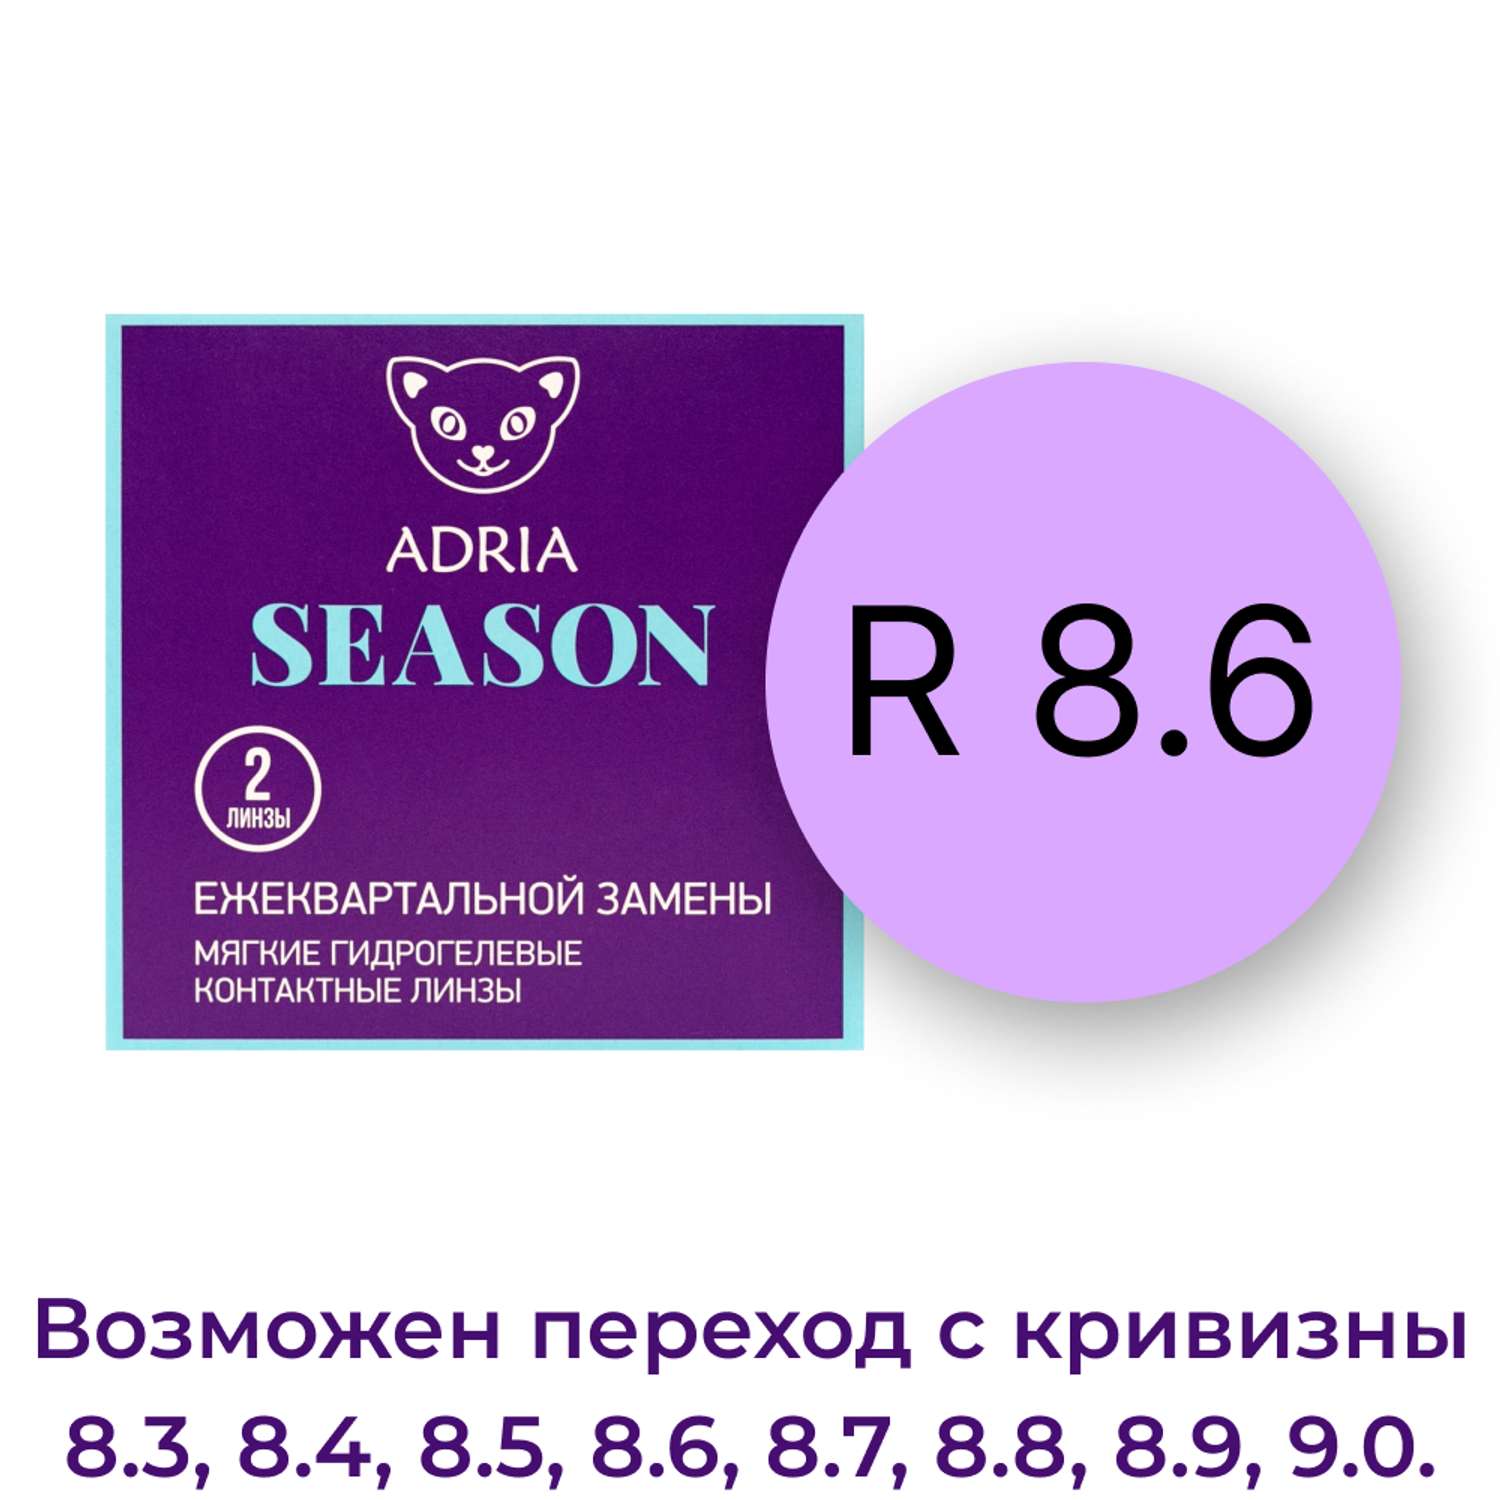 Контактные линзы ADRIA Season 2 линзы R 8.6 -2.75 - фото 3